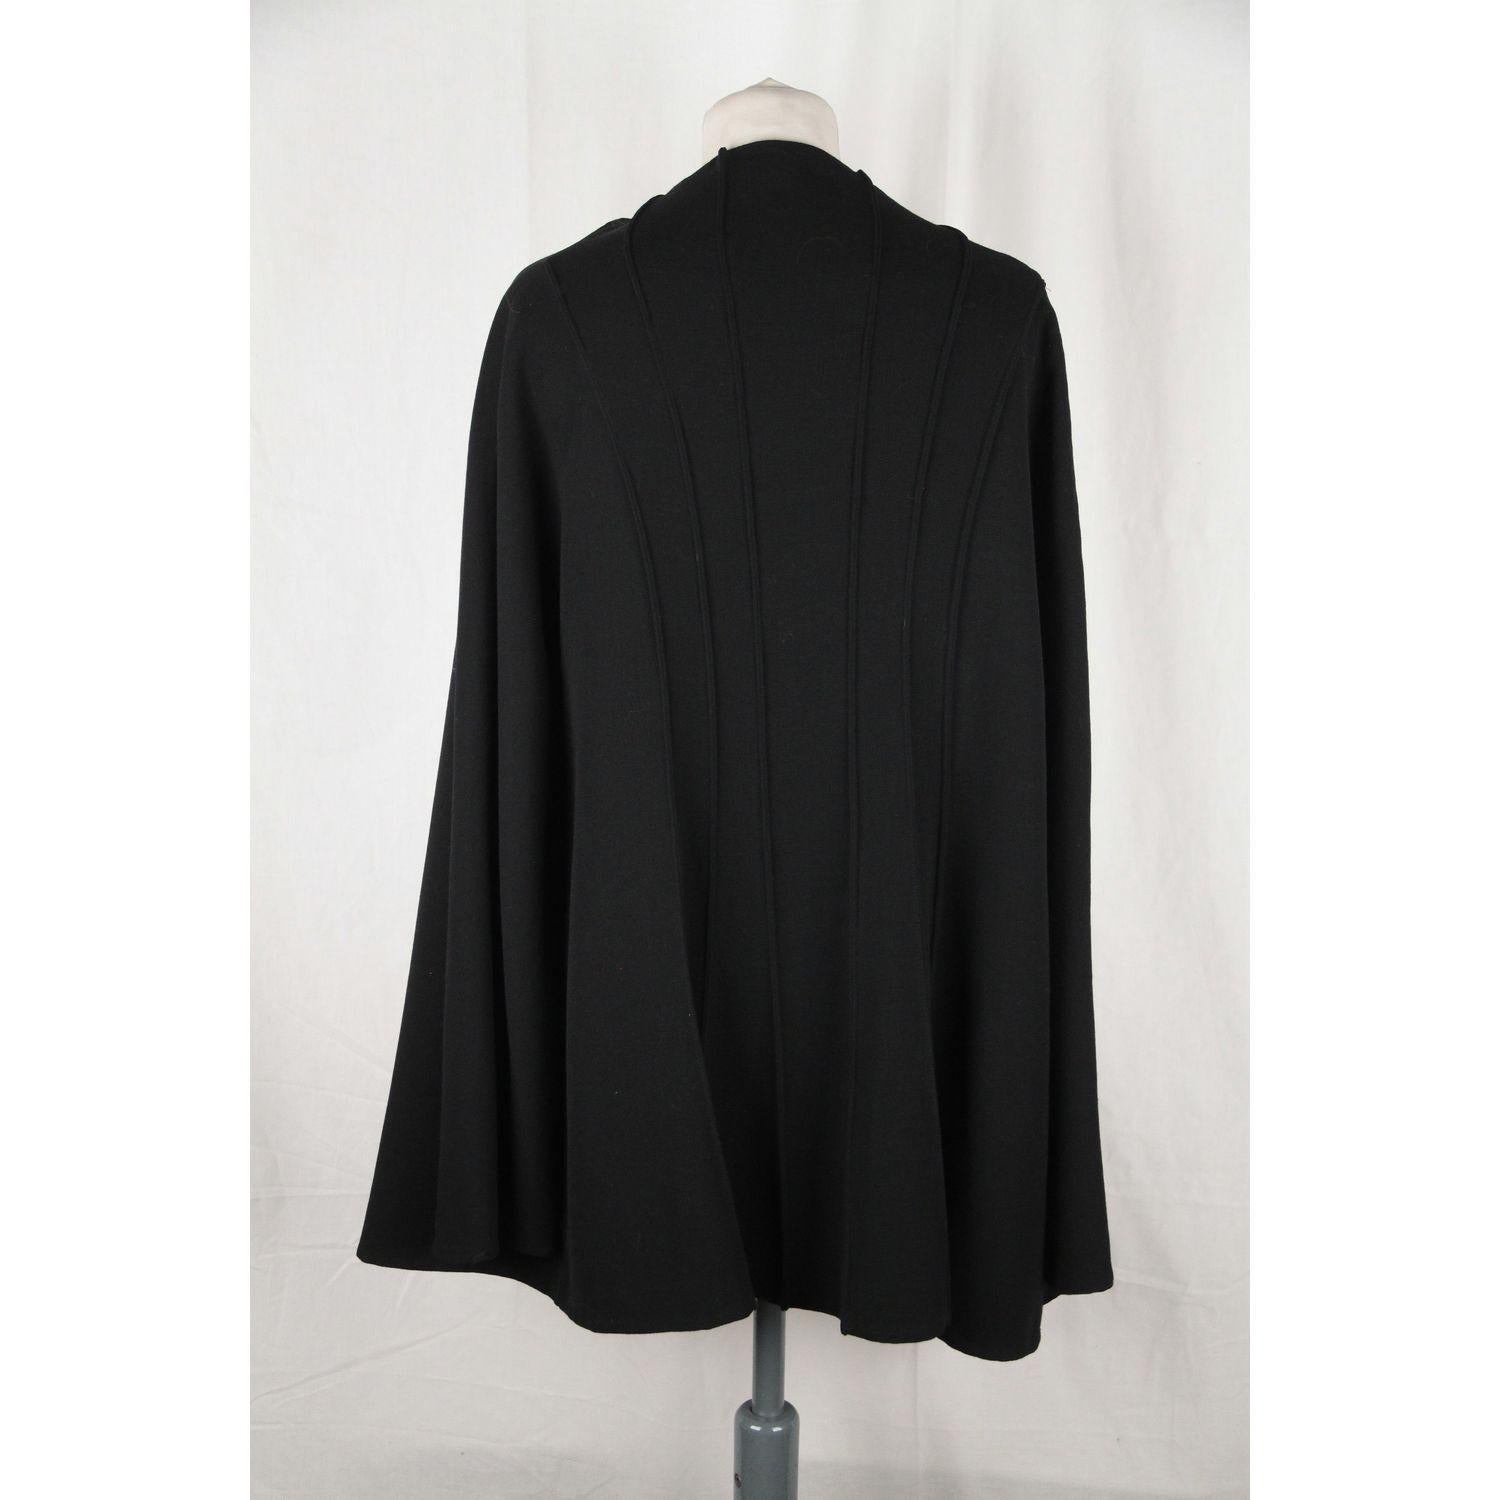 OZEN Black Wool OPEN FRONT CARDIGAN Size 42 1